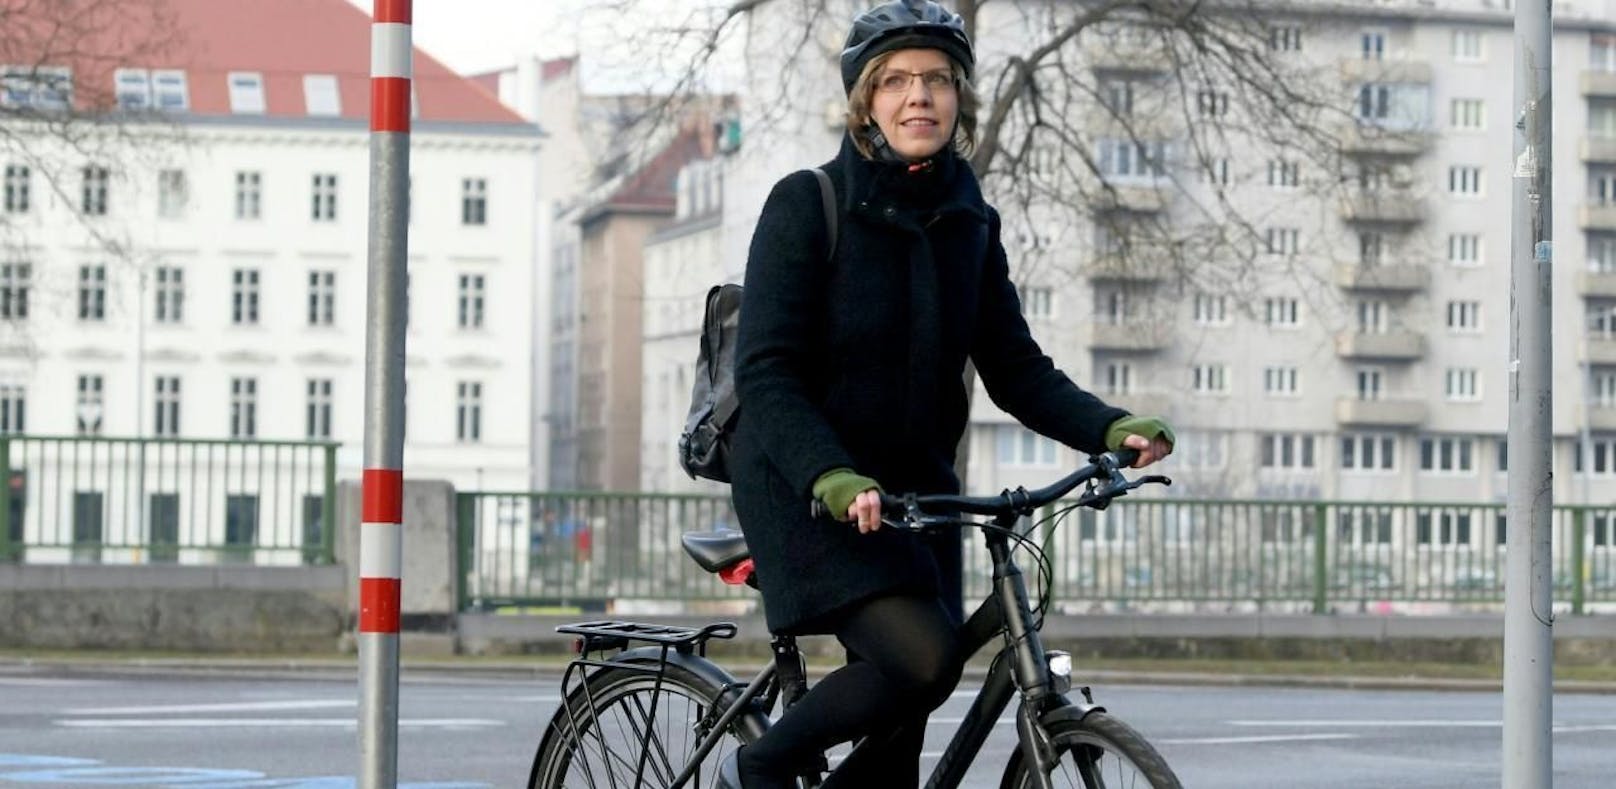 Umwelt- und Infrastrukturministerin Leonore Gewessler (Grüne) will das Radfahren stärken - tritt auch die ÖVP in die Pedale?








